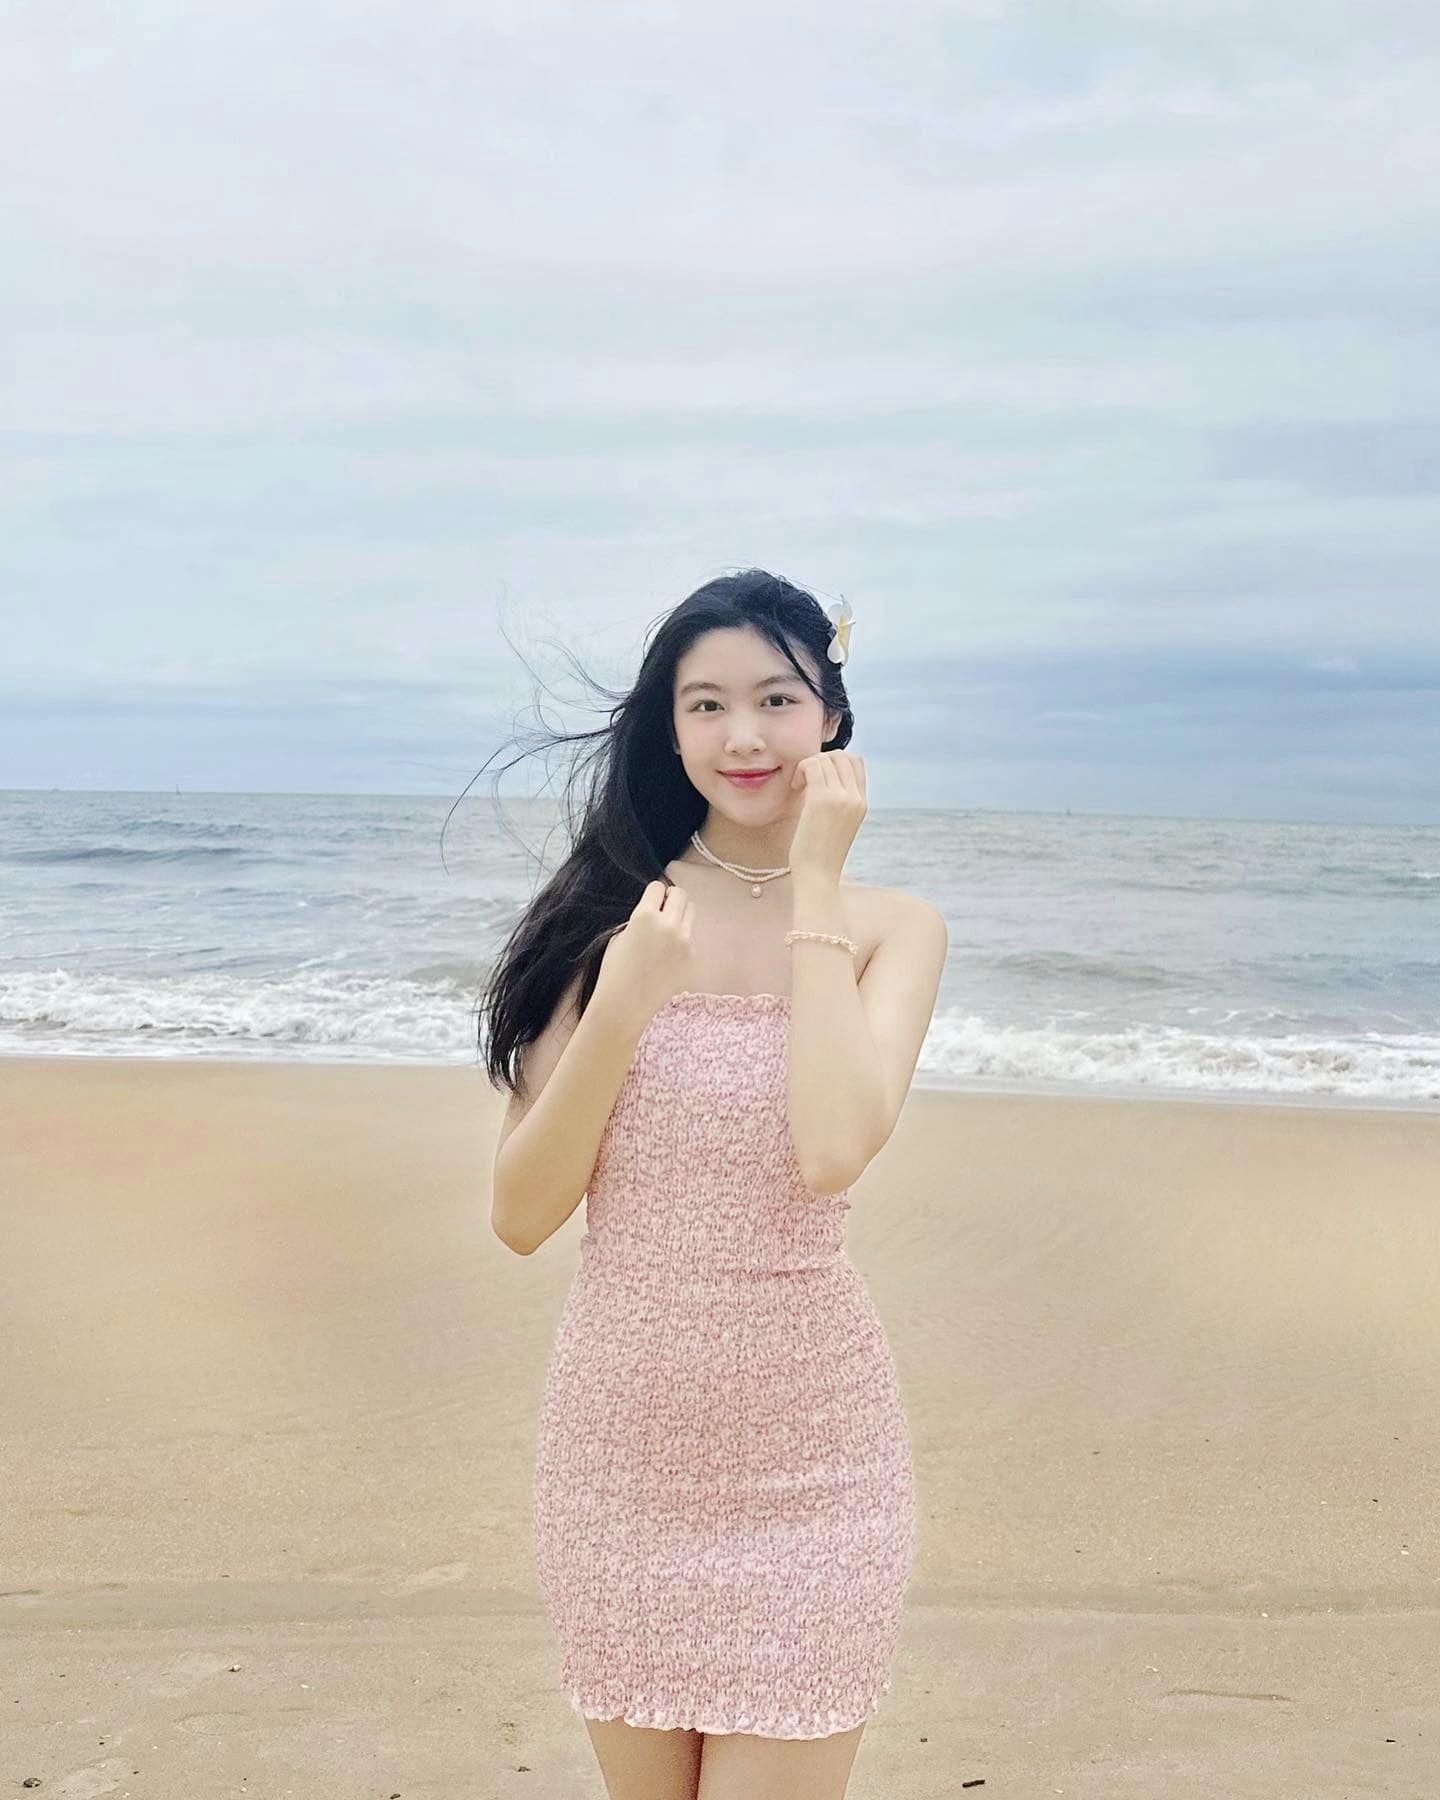 2 con gái của MC Quyền Linh khoe vẻ đẹp xuất sắc, CĐM khen: 'Đây mới là nhan sắc Hoa hậu' - ảnh 2